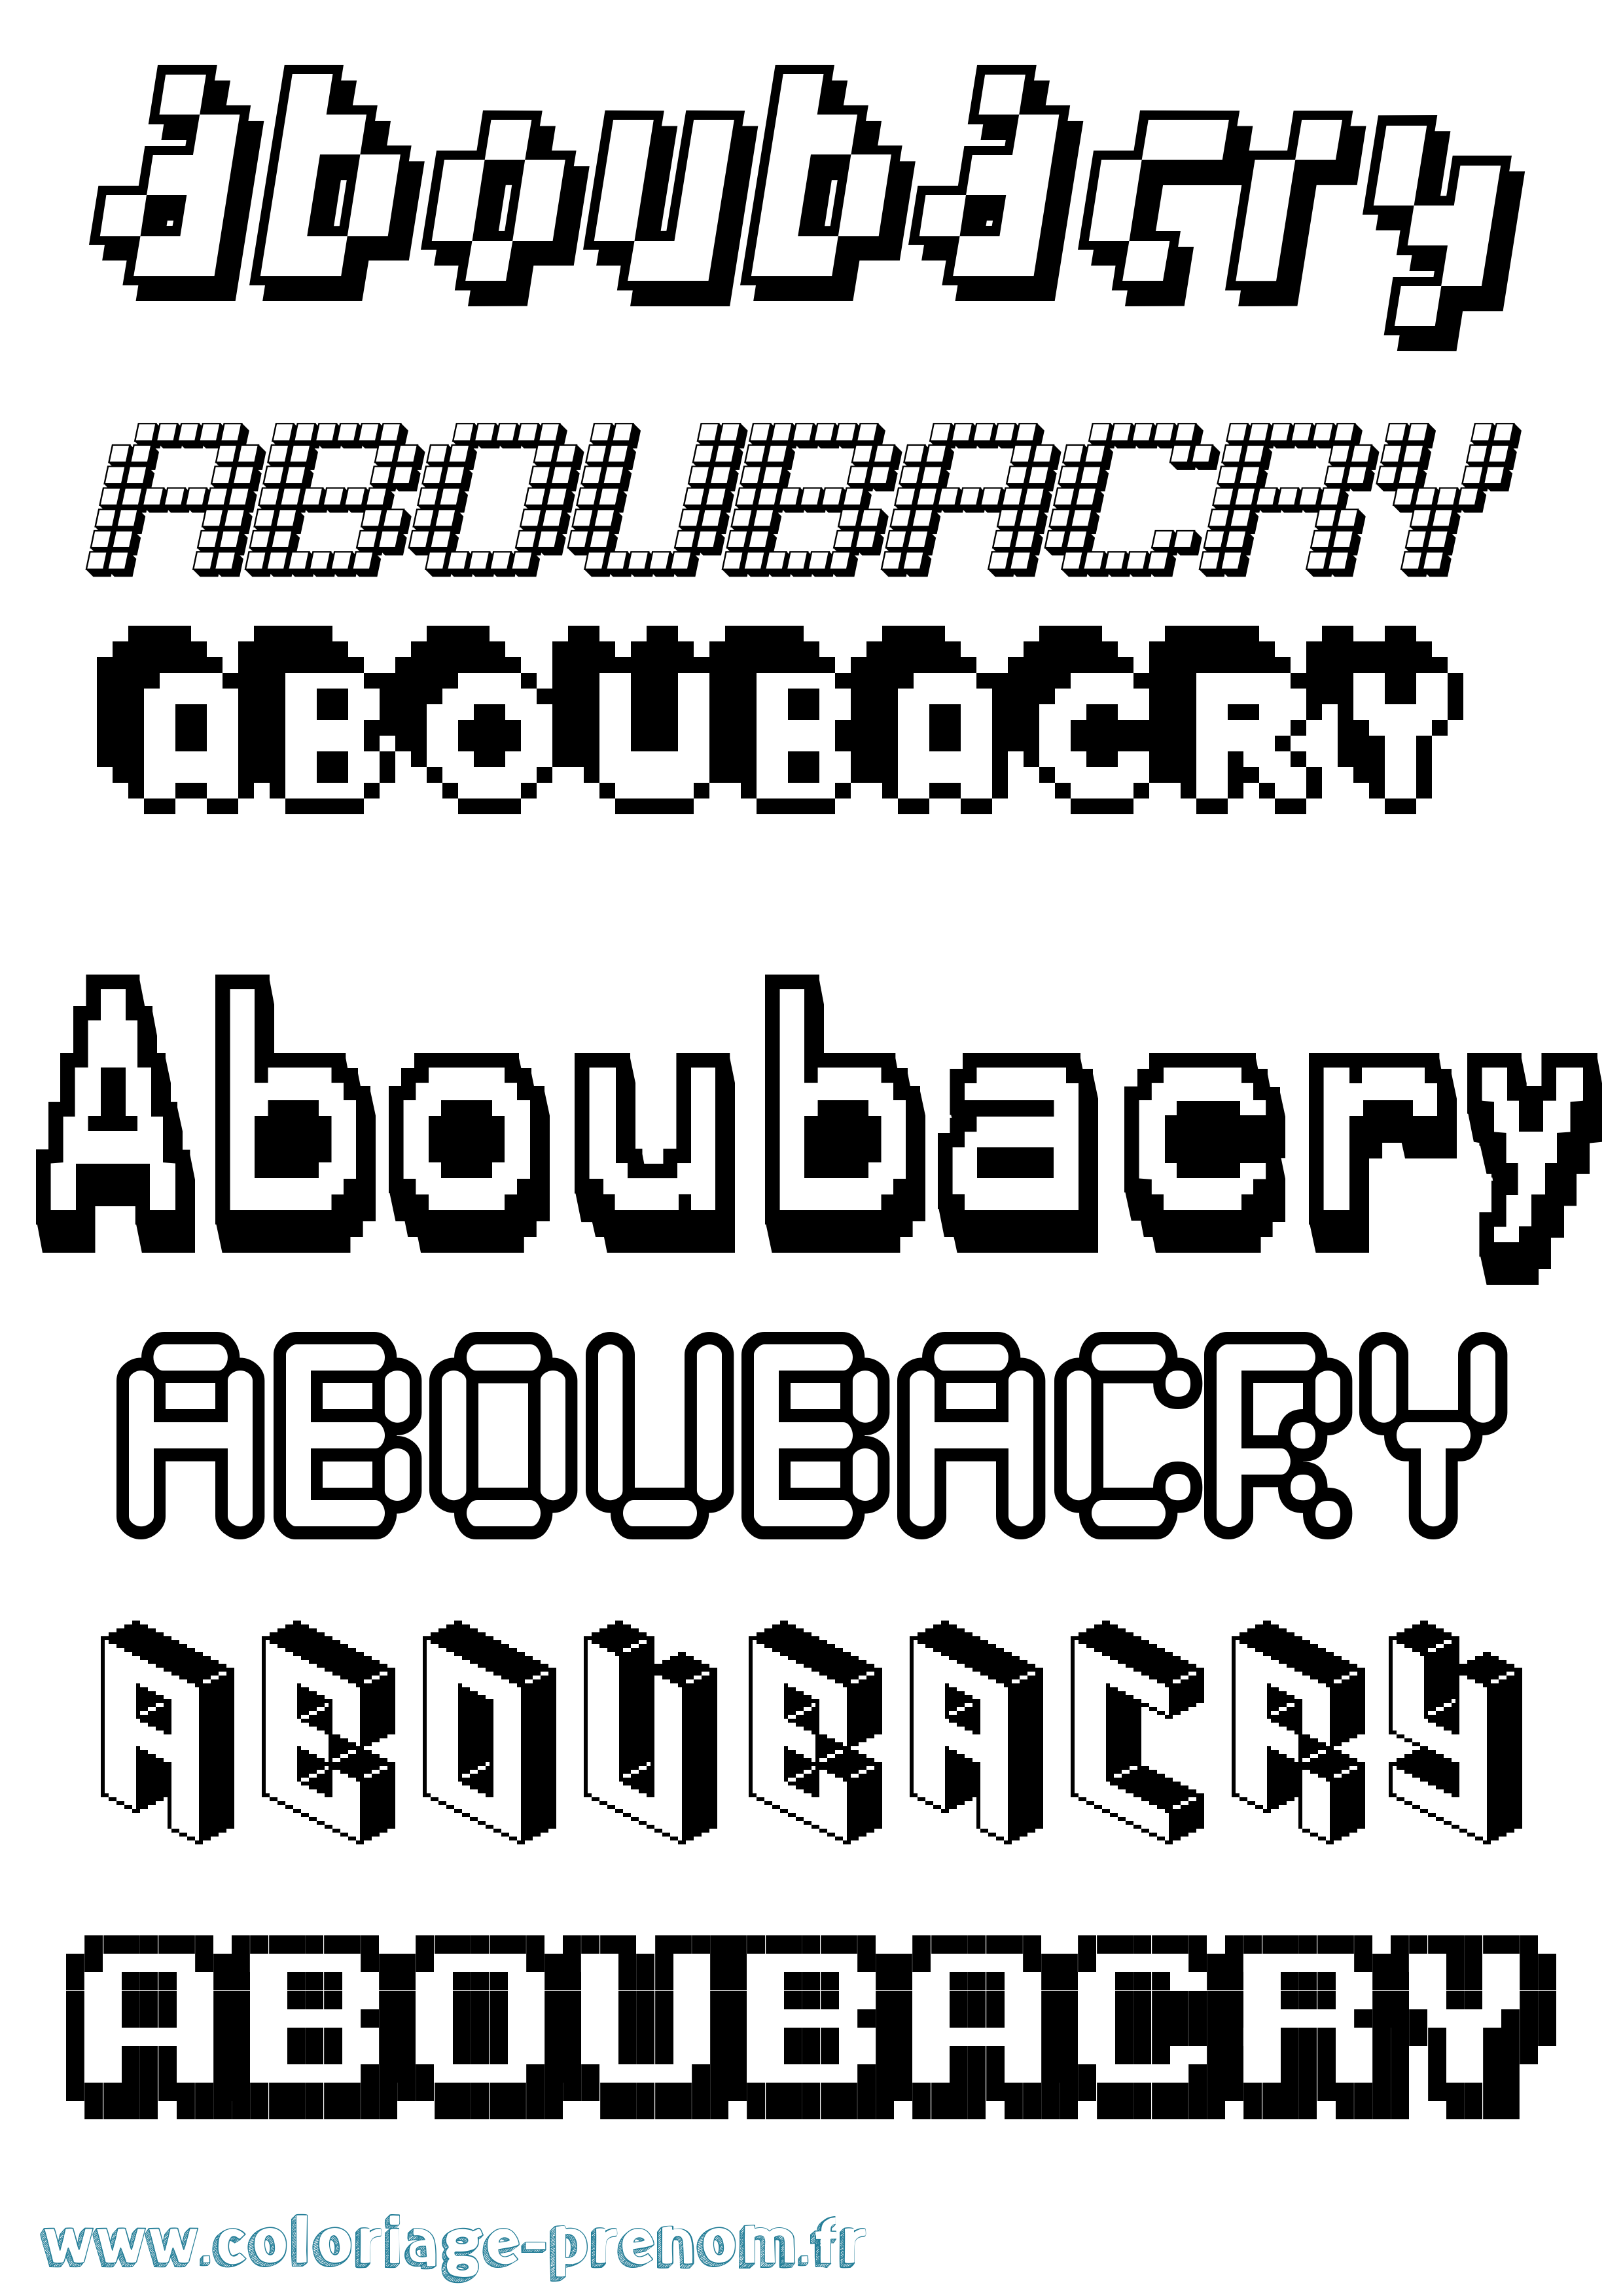 Coloriage prénom Aboubacry Pixel